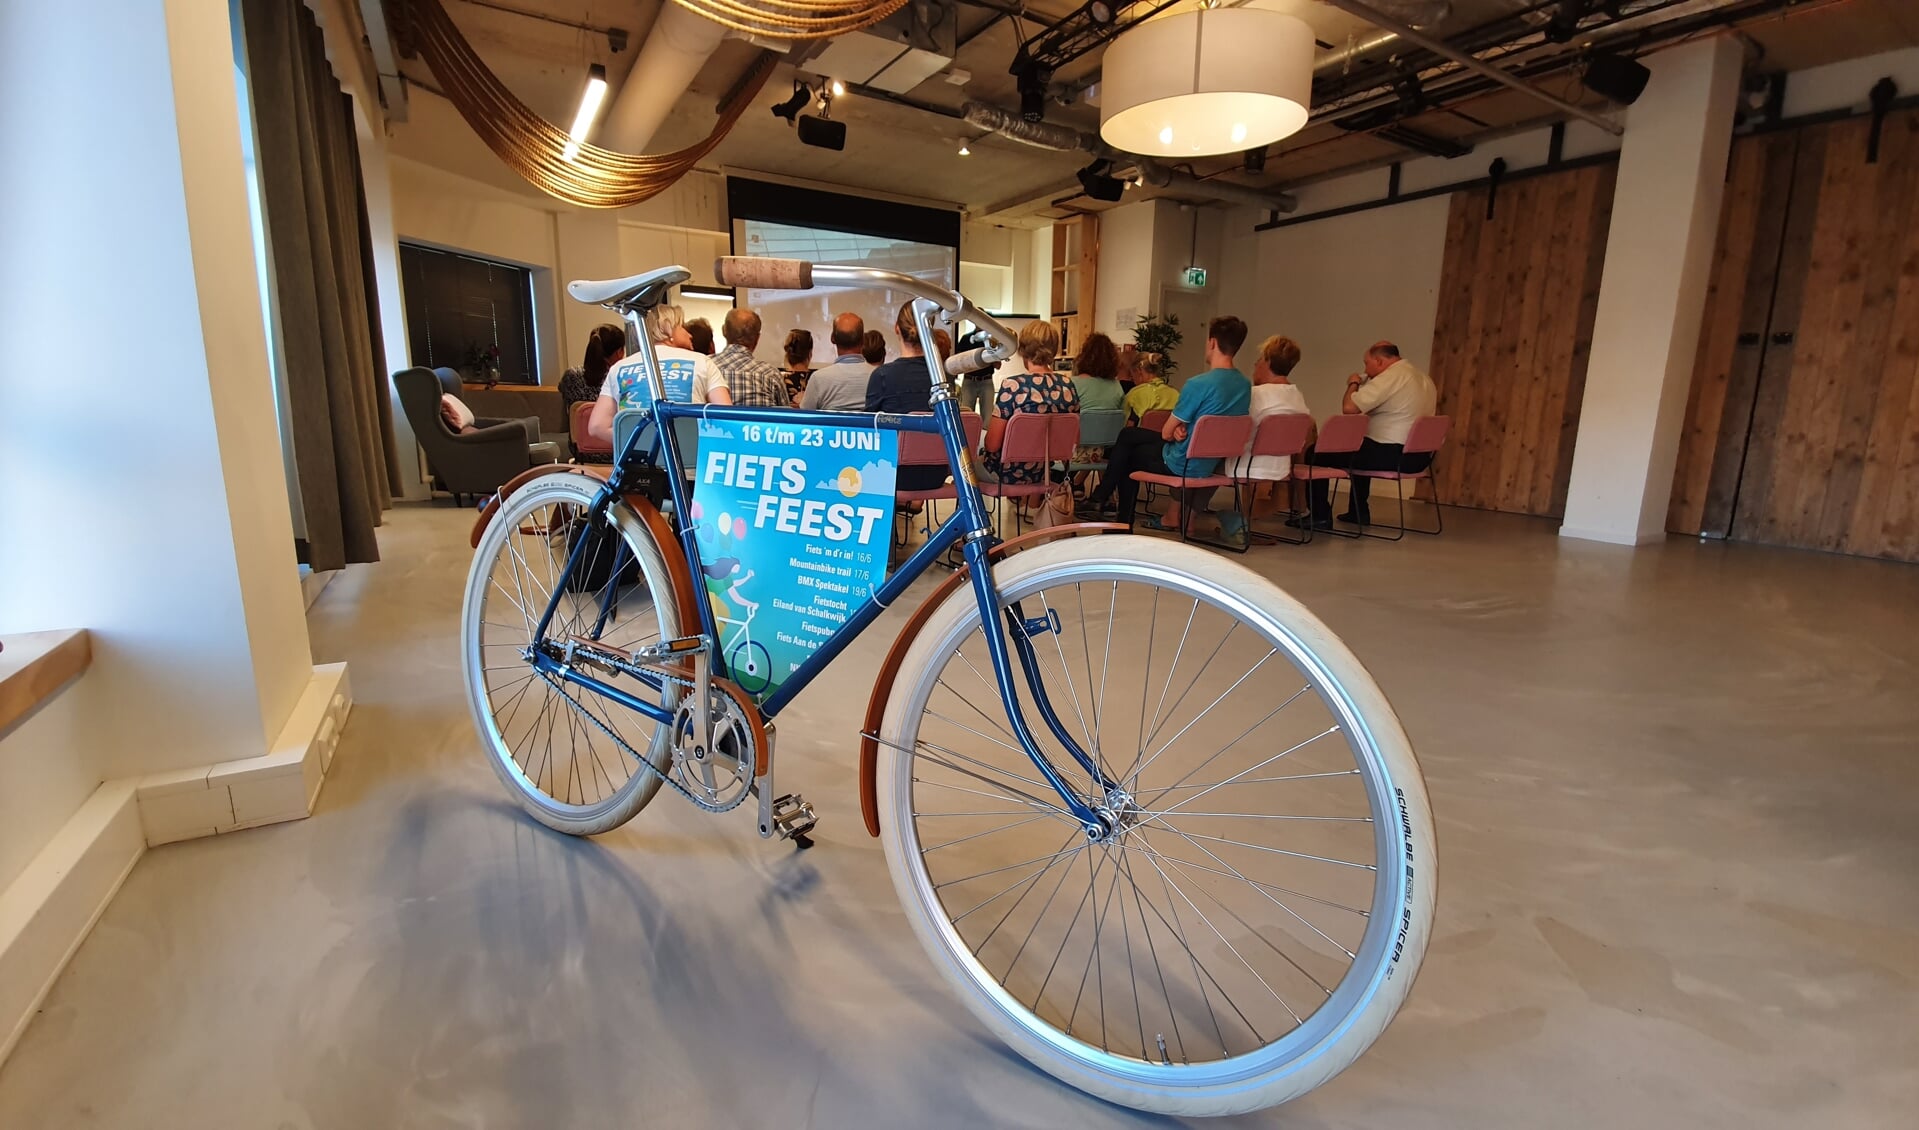 De fiets, Nederland kent meer fietsen dan inwoners